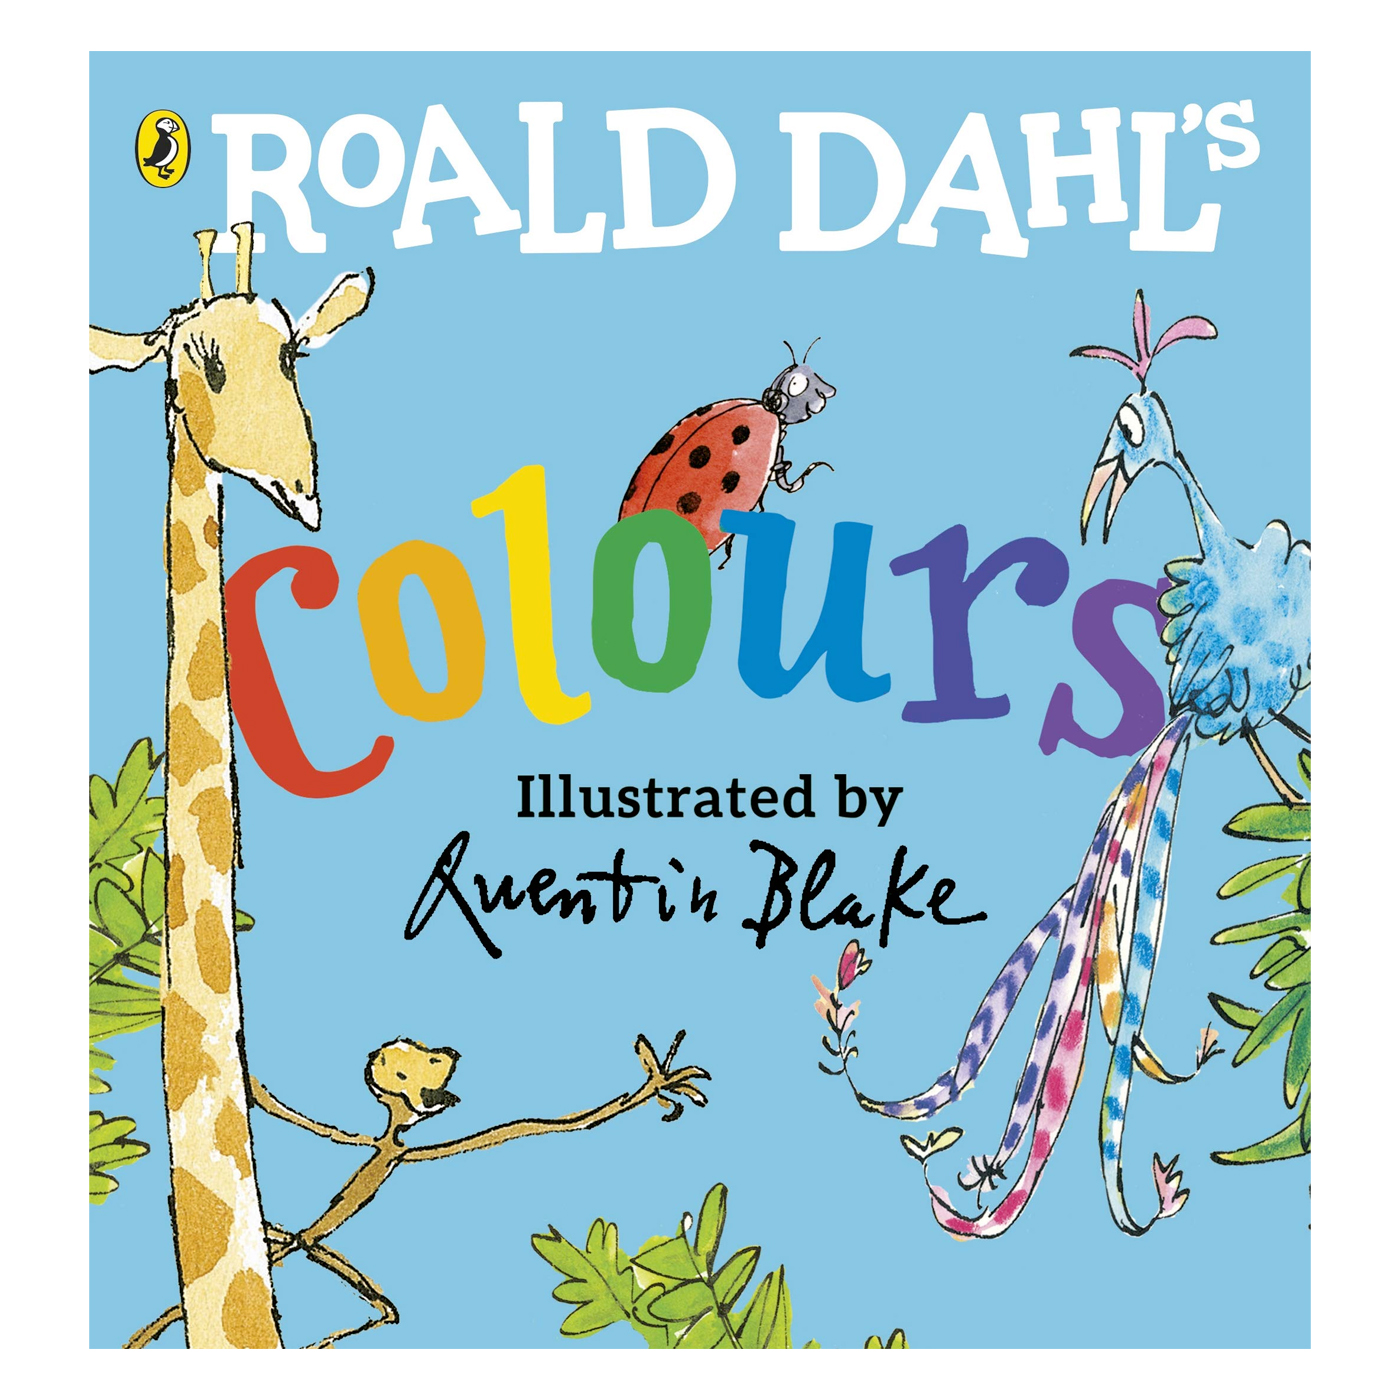  Roald Dahl's Colours